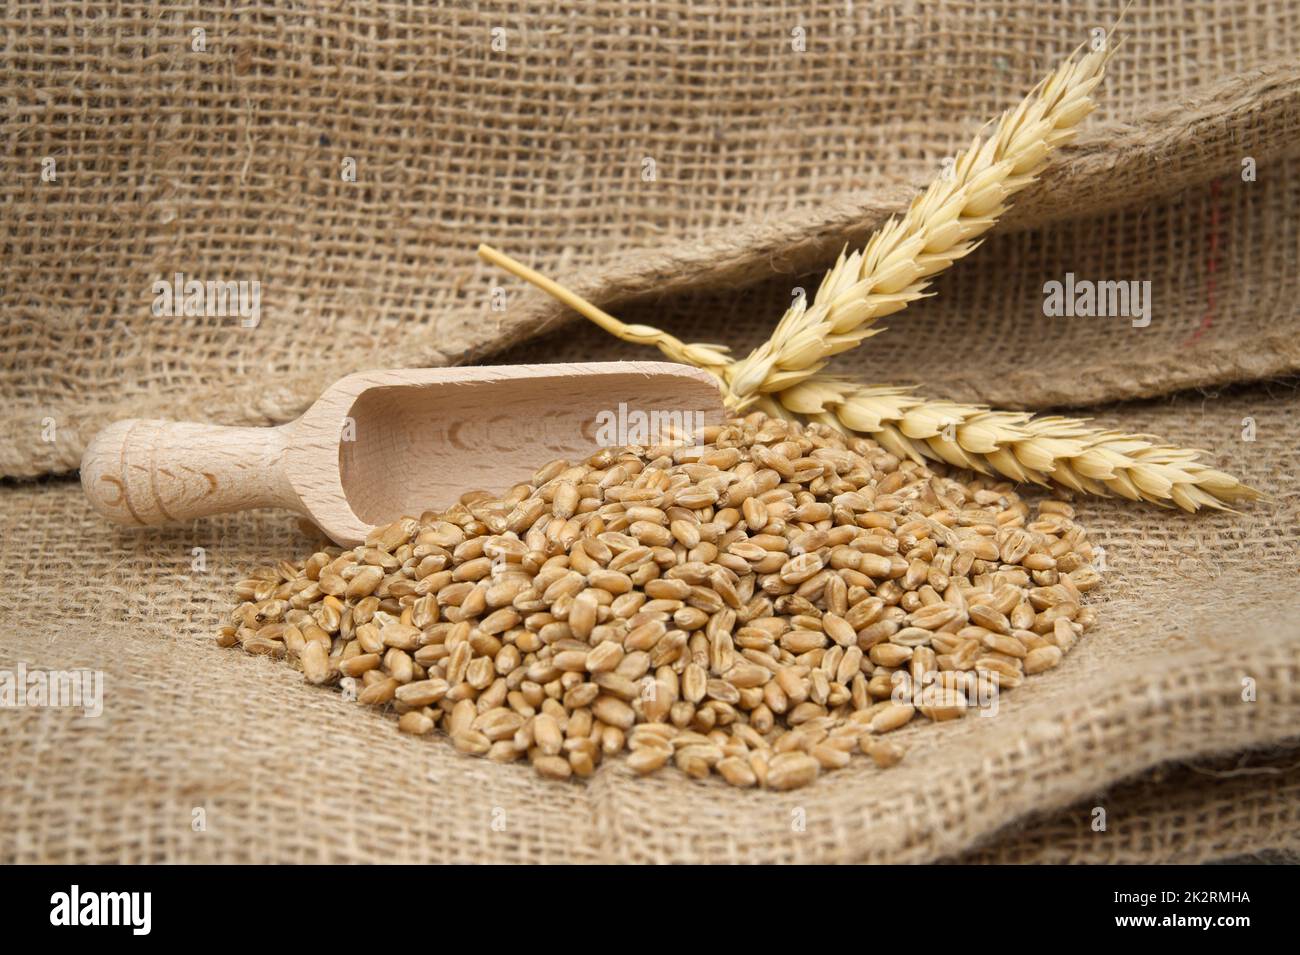 Graines de blé et pelle en bois sur tissu de hessian Banque D'Images